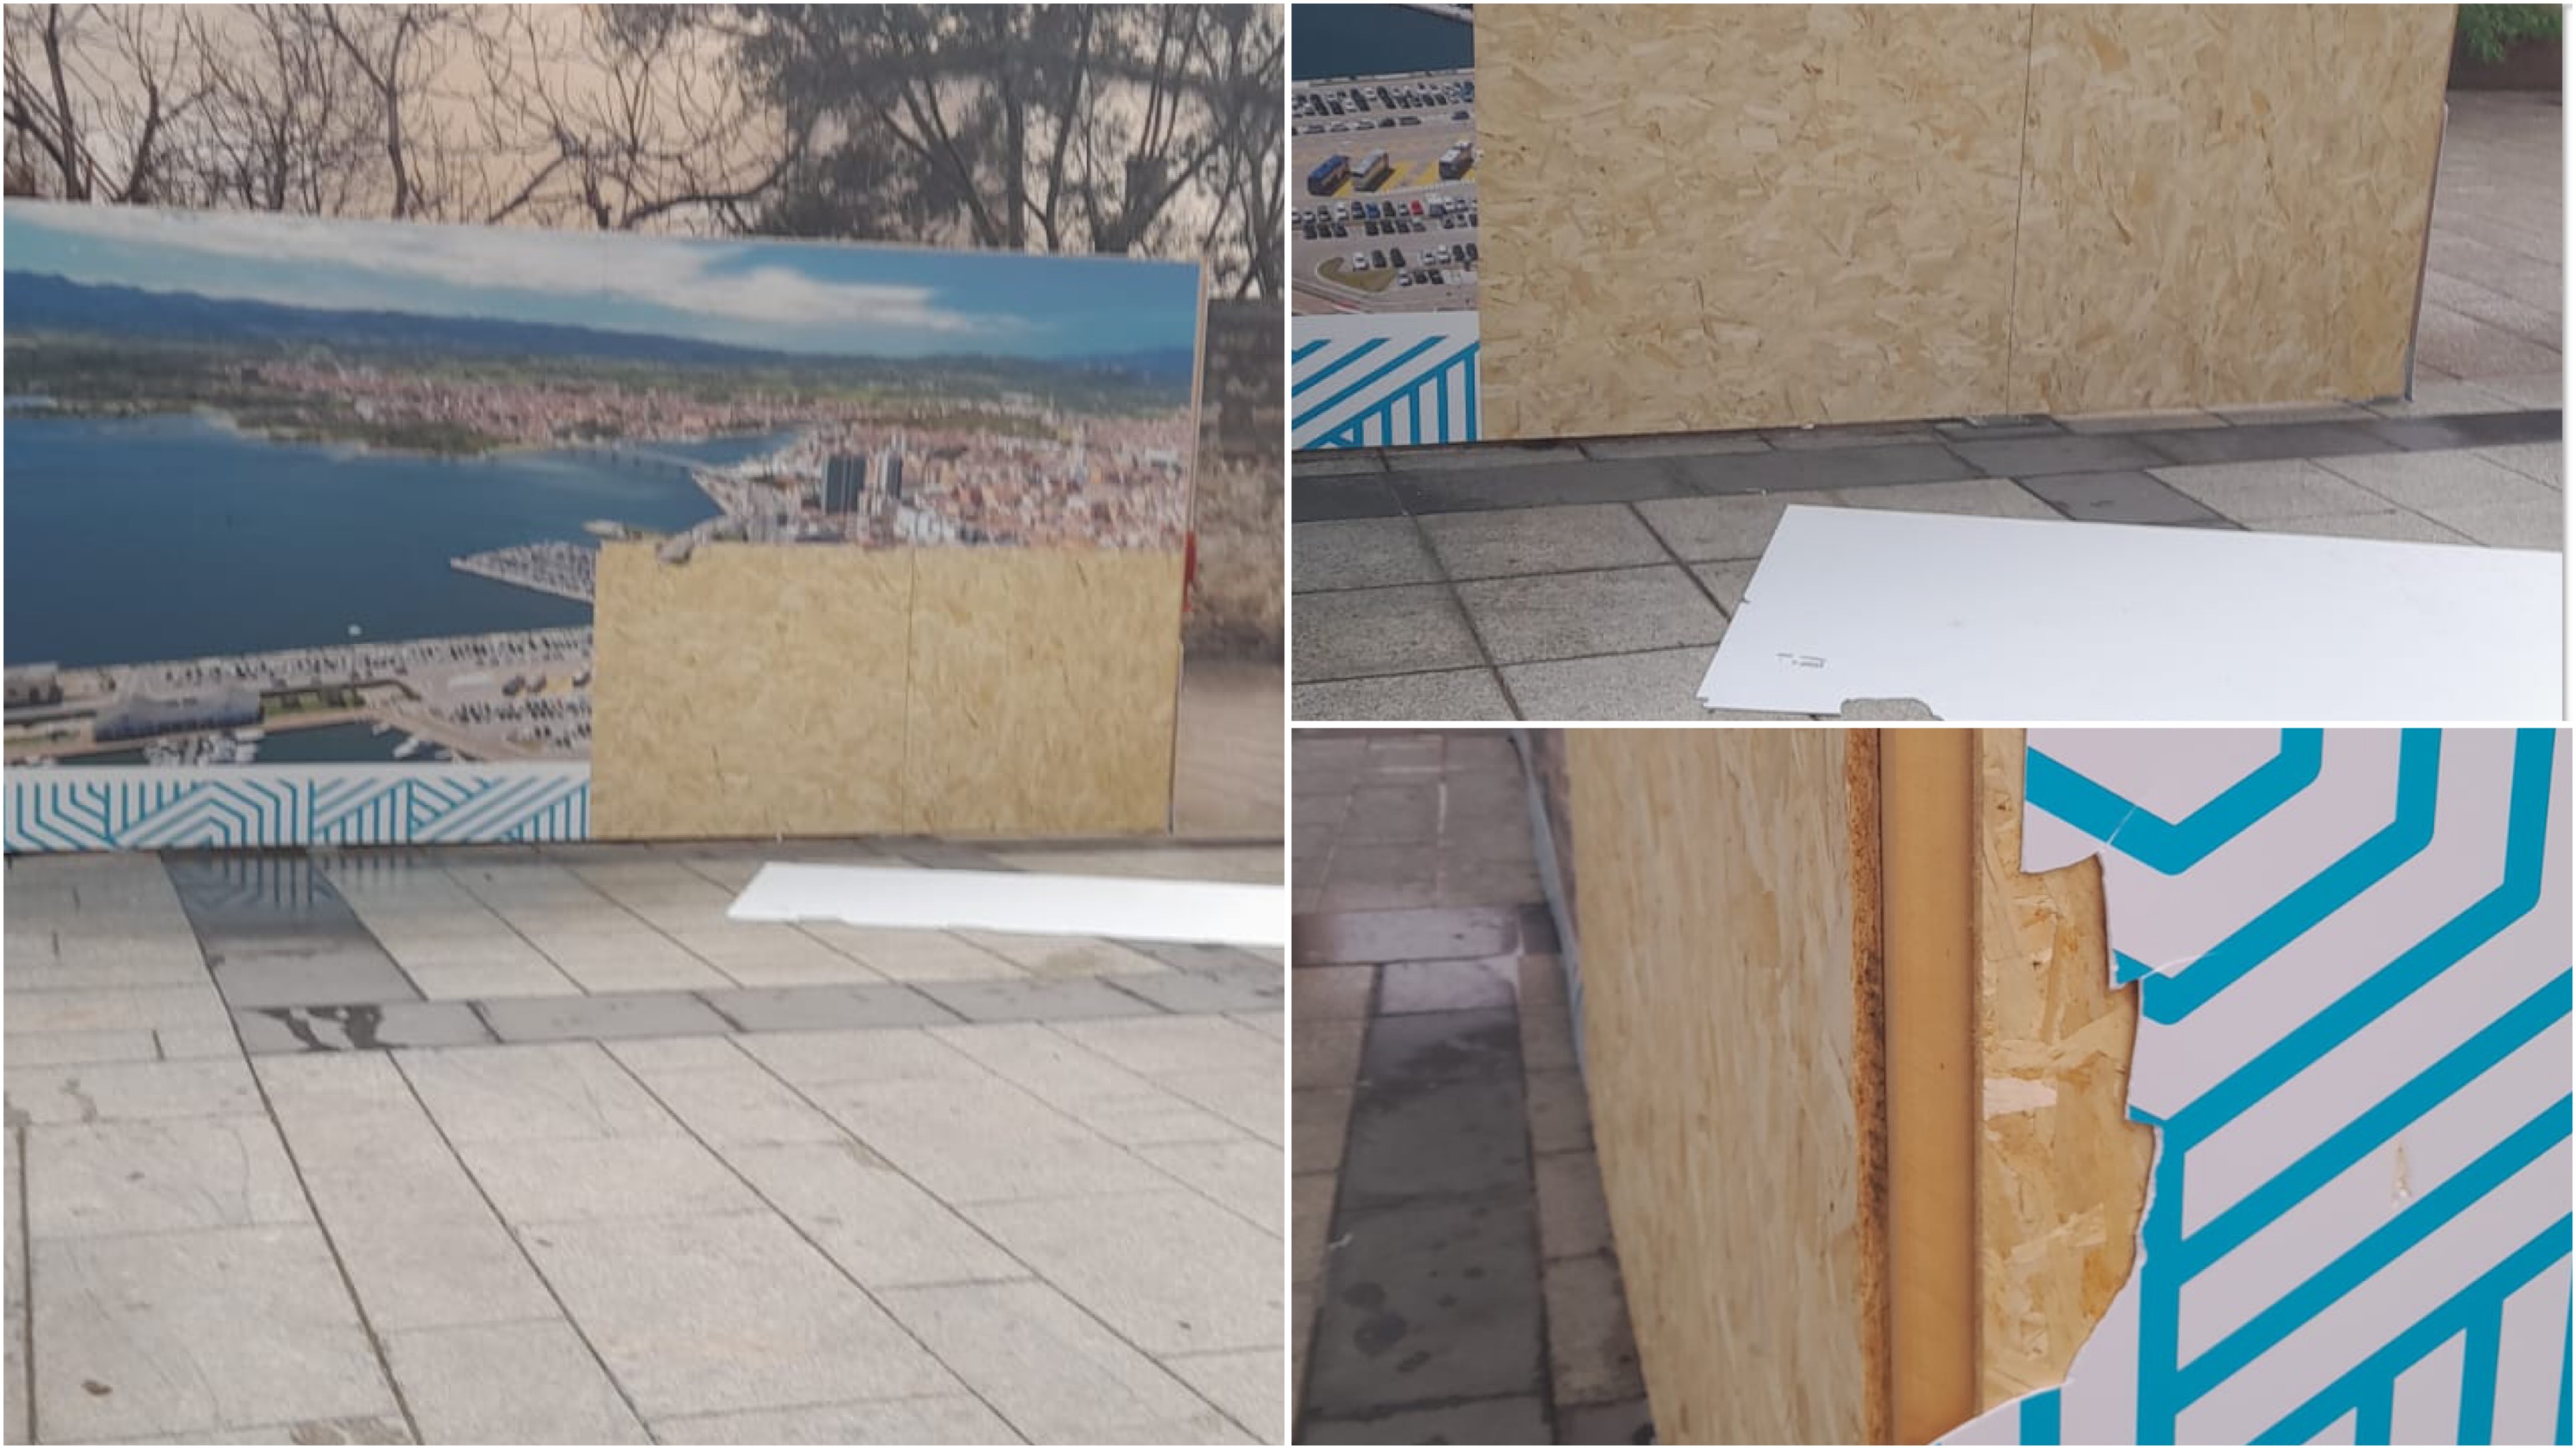 Atto vandalico ad Olbia: danneggiate le gigantografie in piazza Mercato